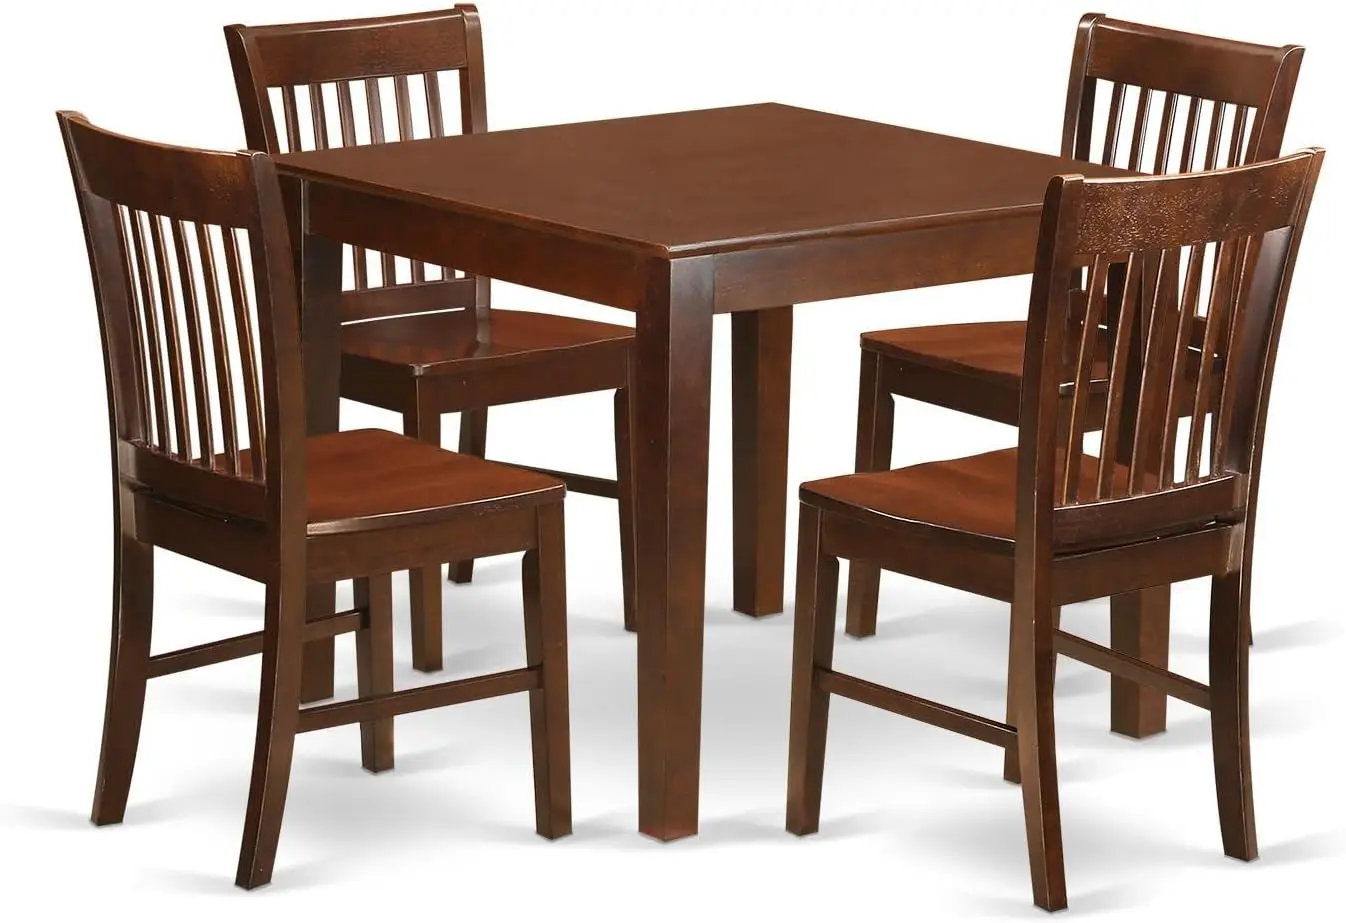 

5-компонентный обеденный набор East West Furniture включает квадратный обеденный стол и 4 кухонные обеденные стулья, 36x36 дюймов, красное дерево